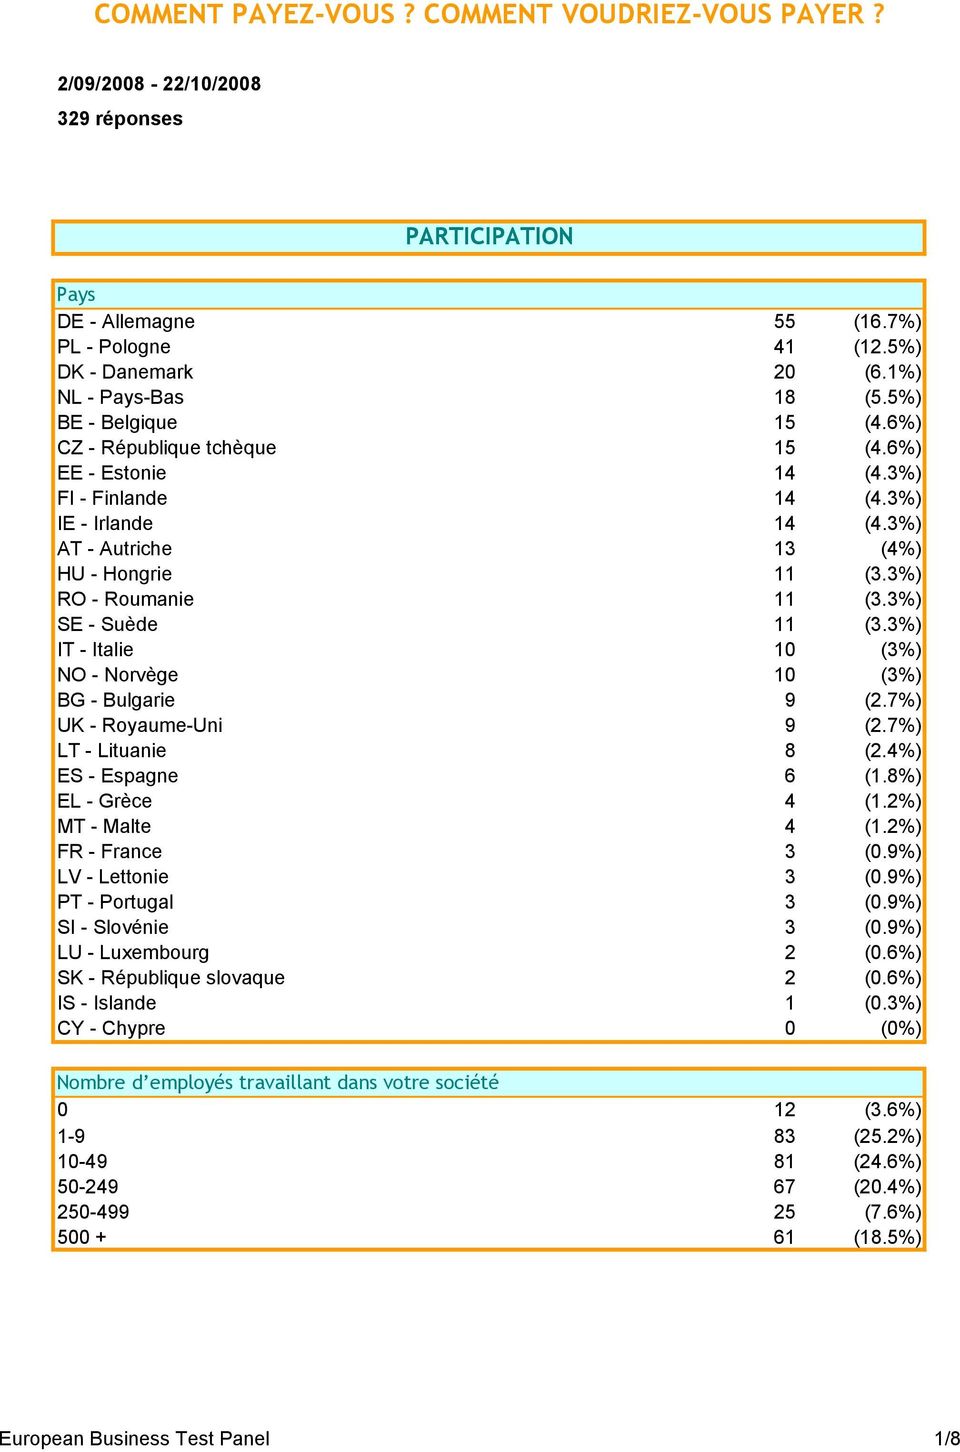 3%) SE - Suède 11 (3.3%) IT - Italie 10 (3%) NO - Norvège 10 (3%) BG - Bulgarie 9 (2.7%) UK - Royaume-Uni 9 (2.7%) LT - Lituanie 8 (2.4%) ES - Espagne 6 (1.8%) EL - Grèce 4 (1.2%) MT - Malte 4 (1.